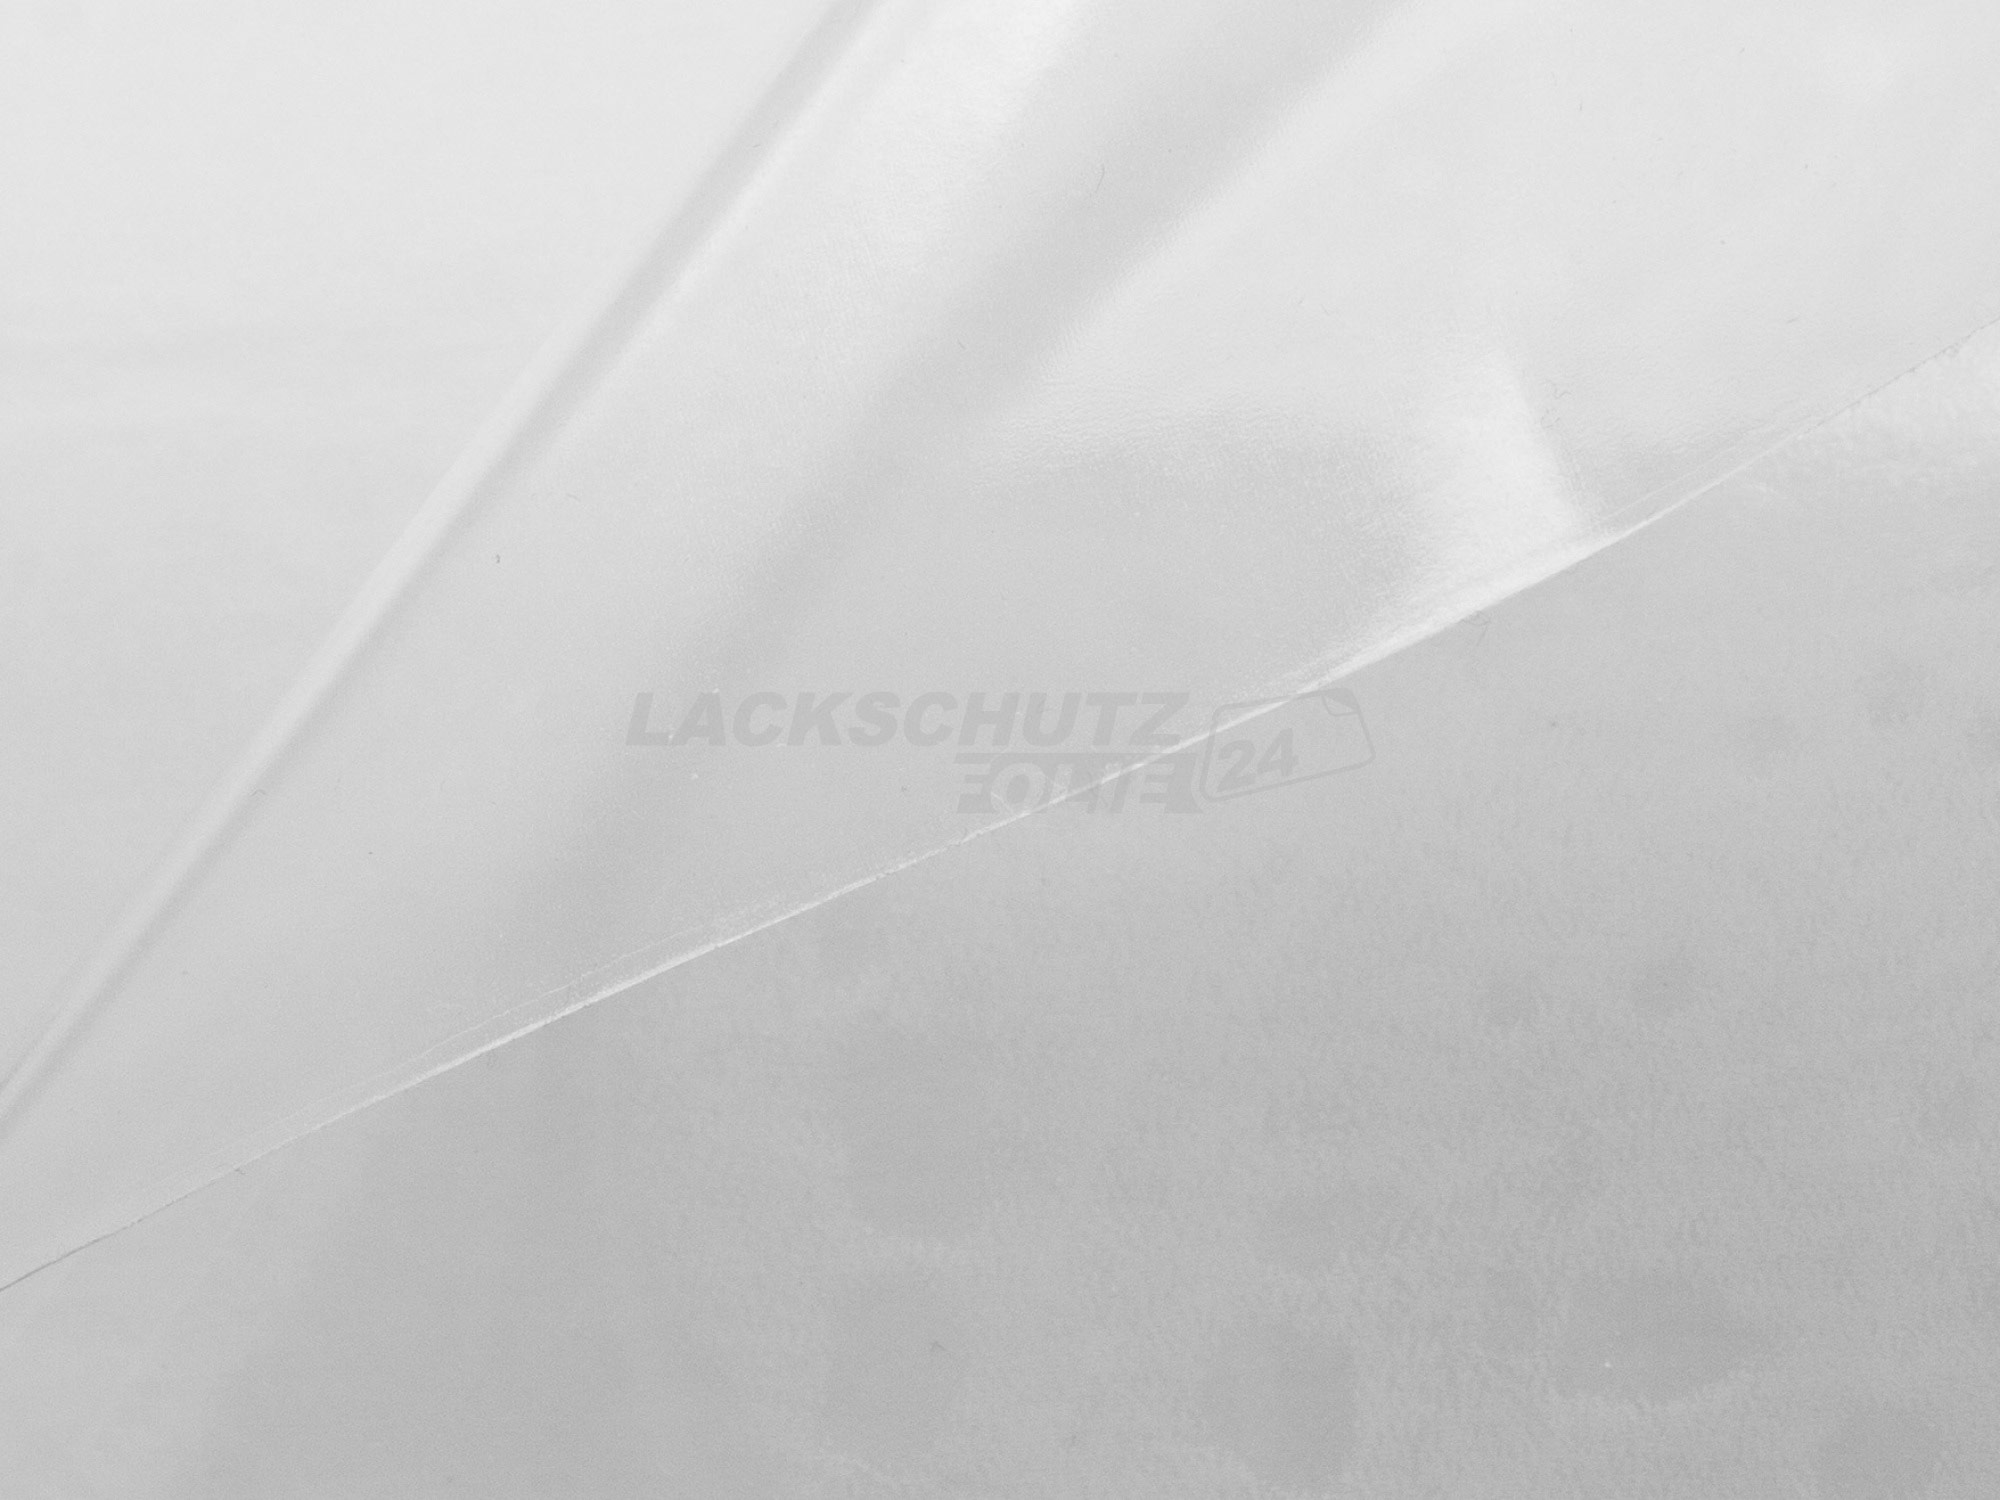 Ladekantenschutzfolie - Transparent Glatt Hochglänzend 150 µm stark für VW / Volkswagen Passat Variant (Kombi) B5 GP, Typ 3BG, BJ 2000-2005